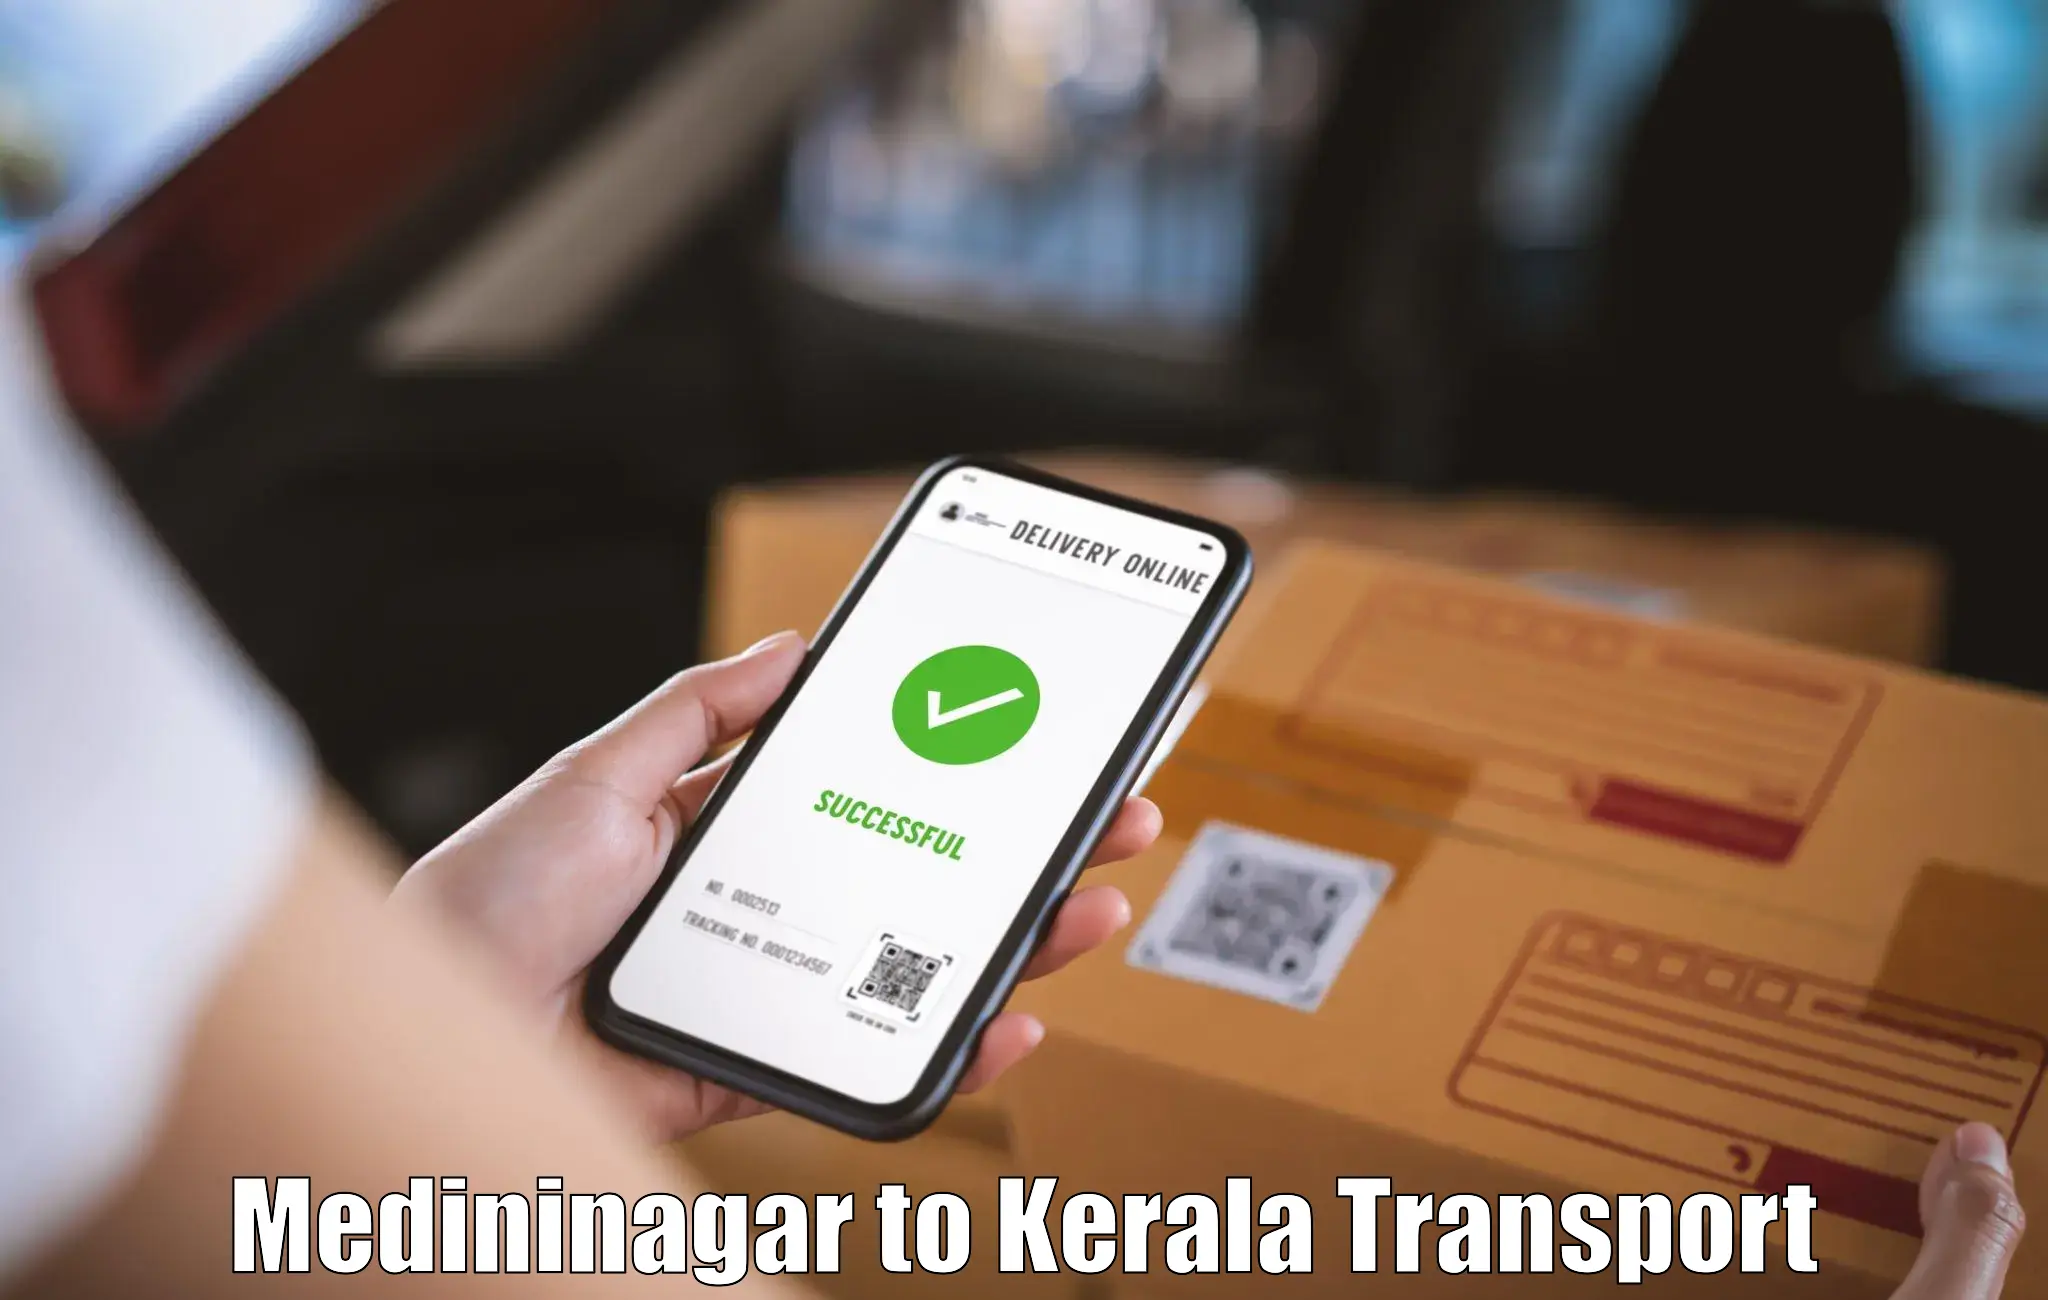 Transport in sharing Medininagar to Kottayam